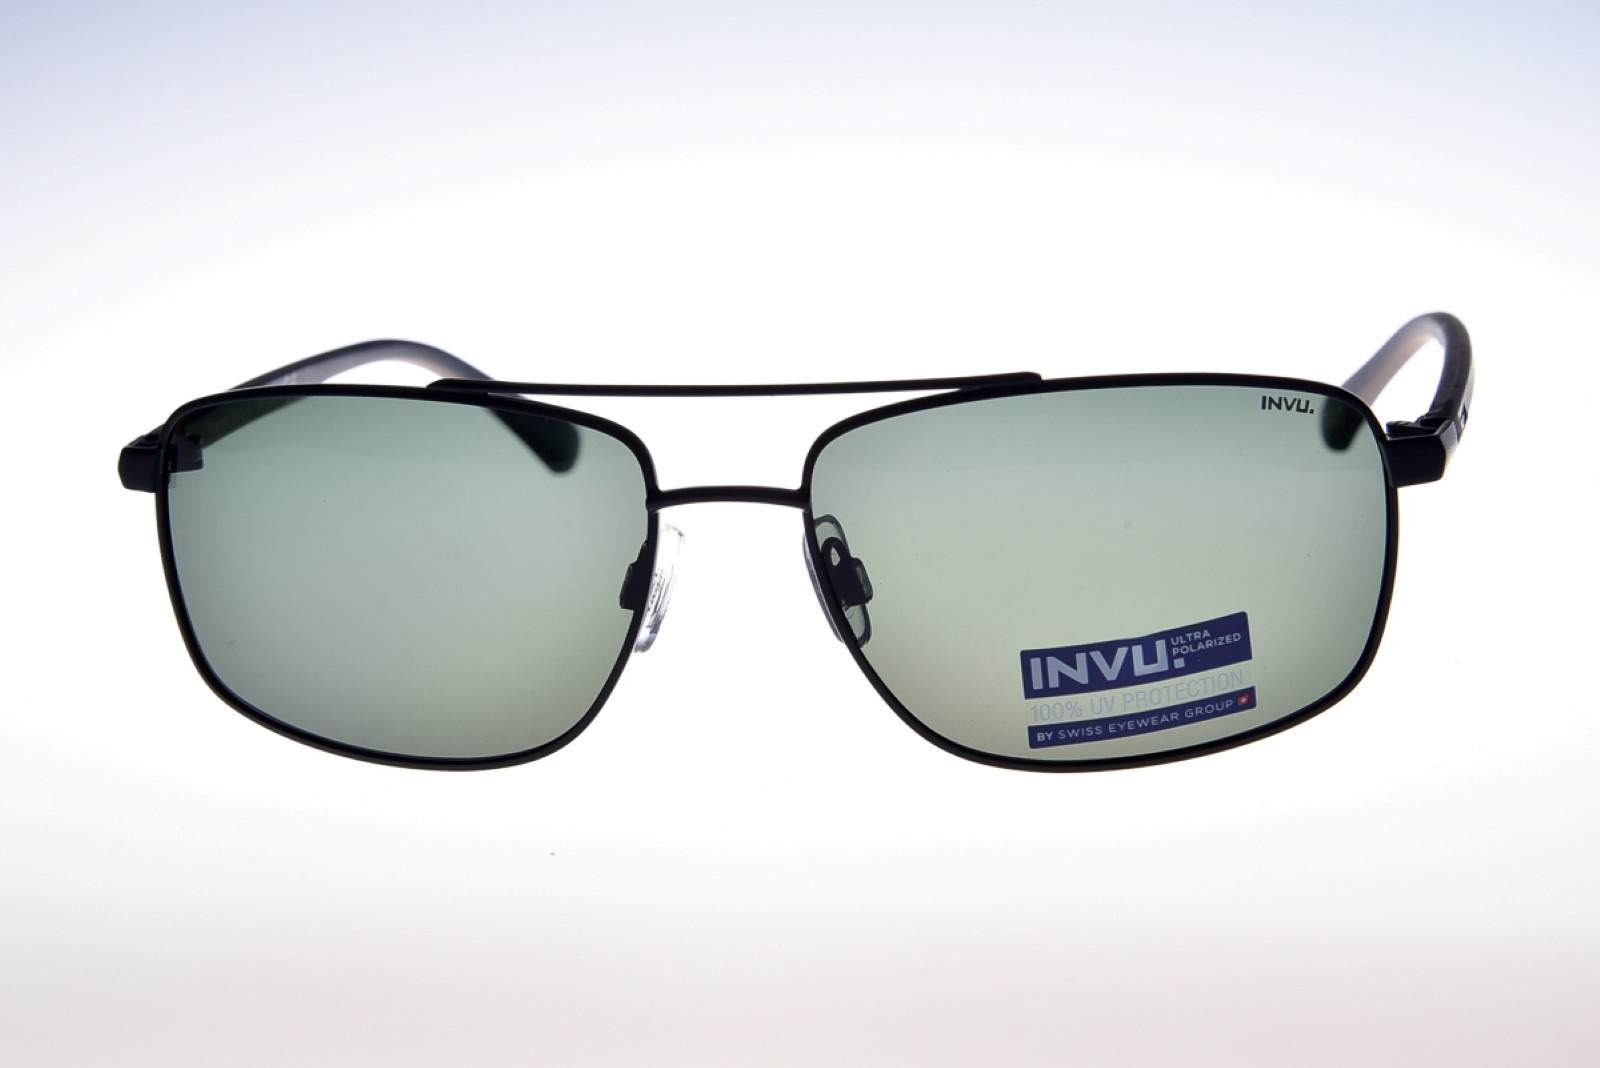 INVU. Classic B1810A - Pánske slnečné okuliare